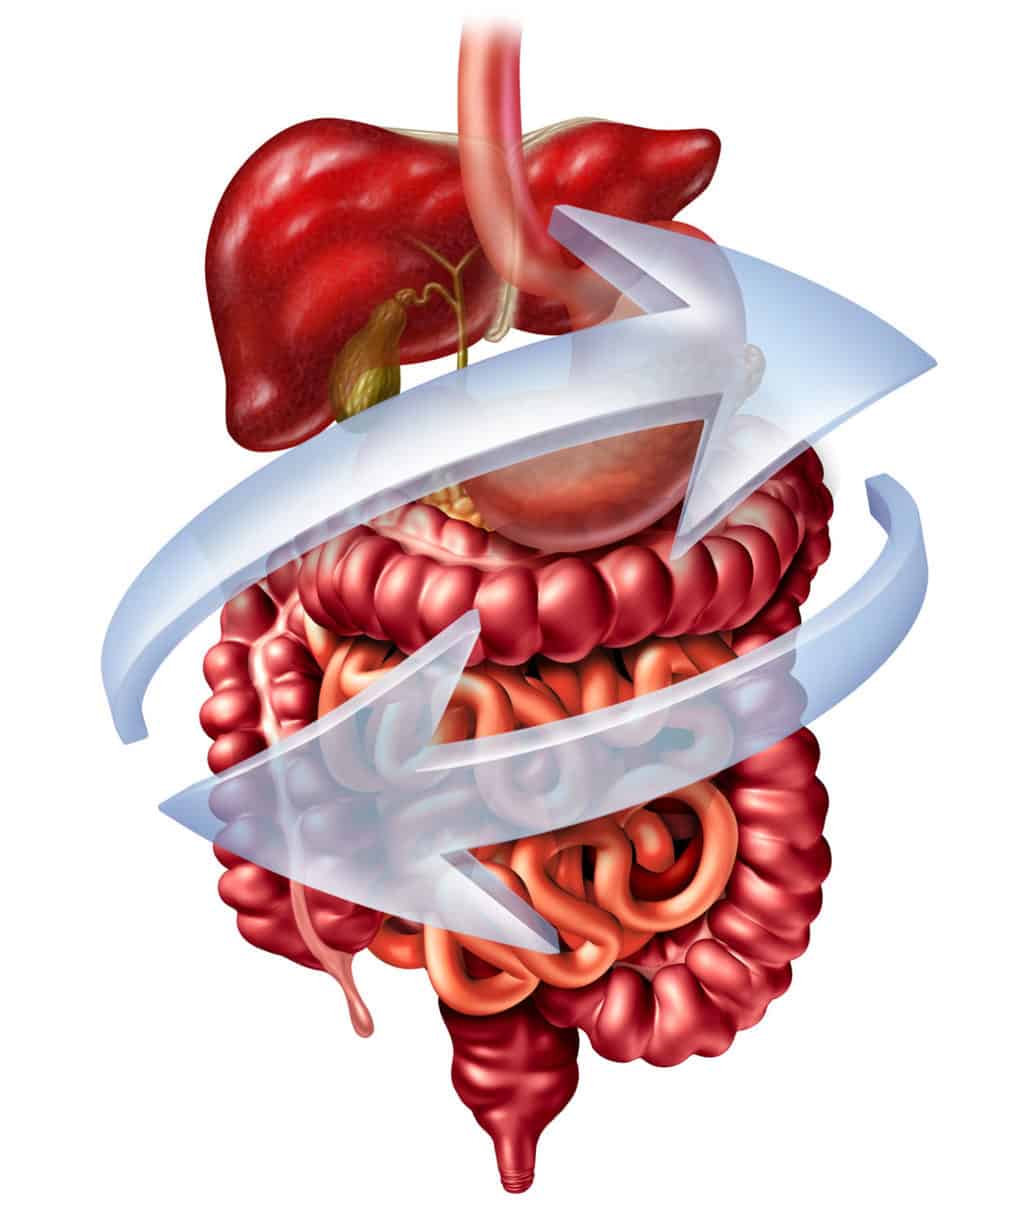 Verdauungsorgane des Menschen -Magen, Darm, Leber, Gallenblase isoliert dargestellt auf weissem Grung